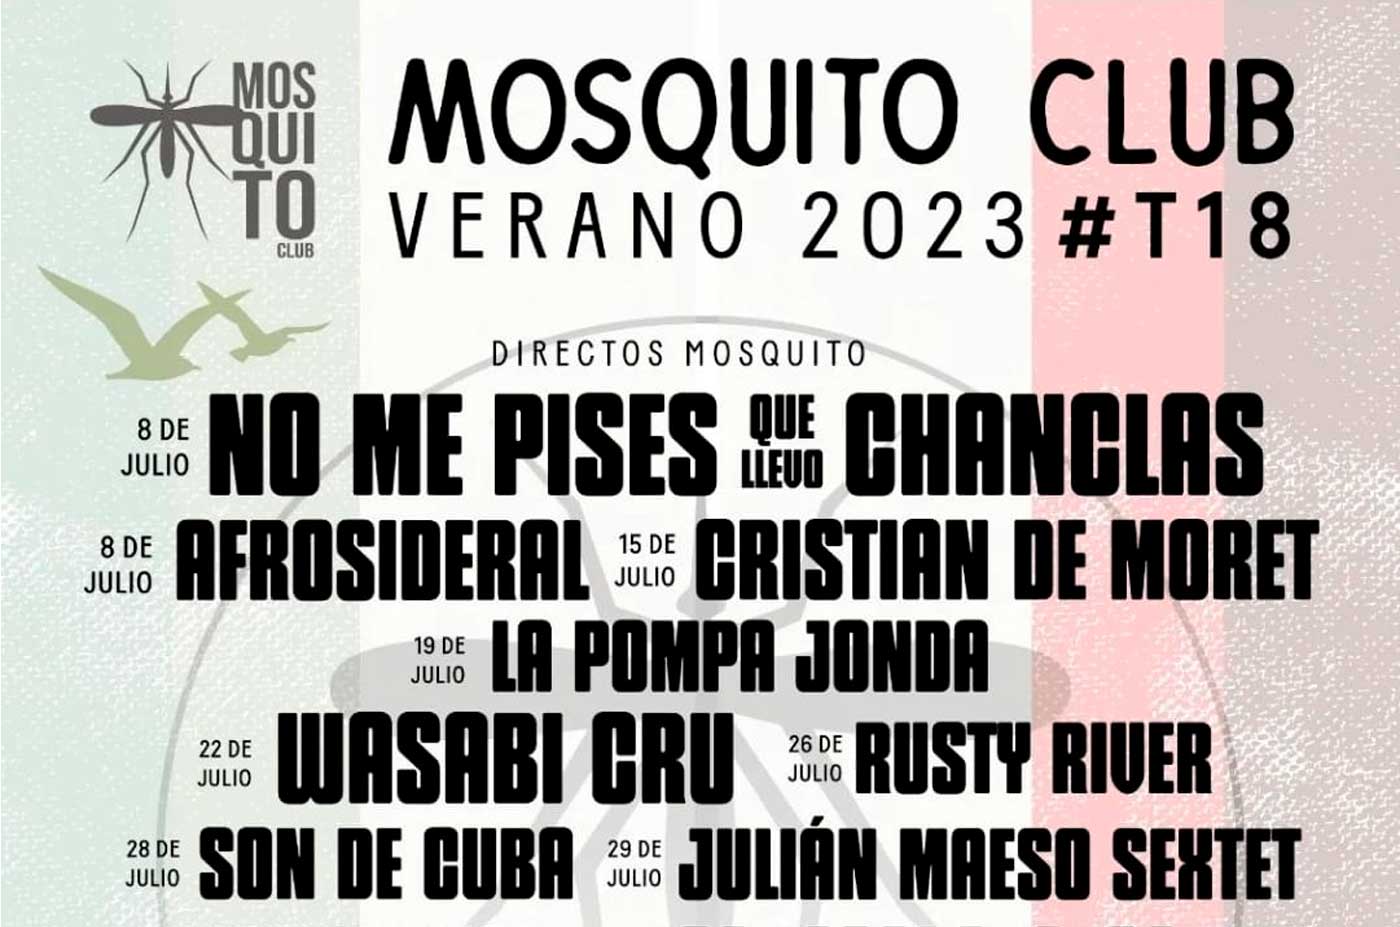 Mosquito Club programacion conciertos verano 2023 julio agosto Tomasito No me pises que llevo chanclas